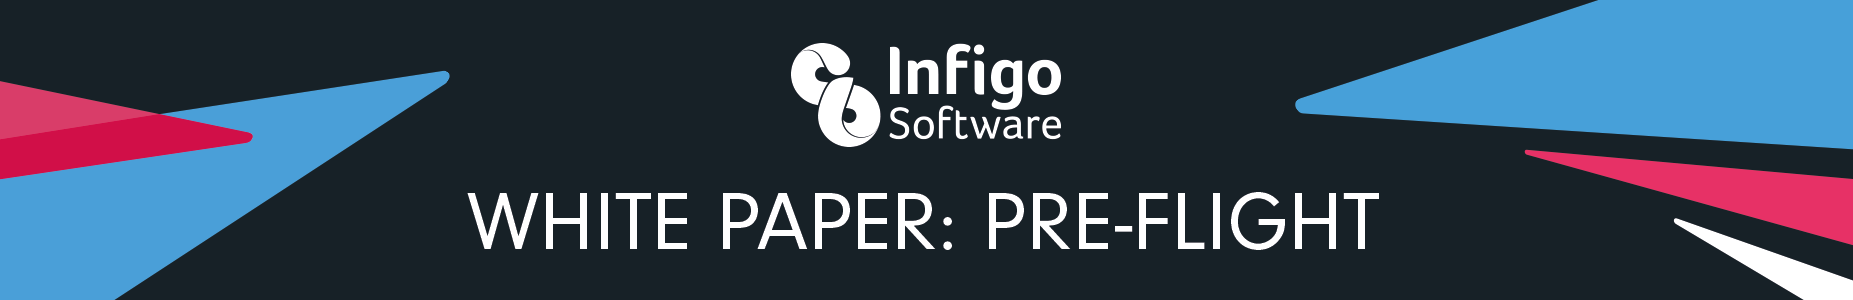 Infigo web banner for white paper (Black)